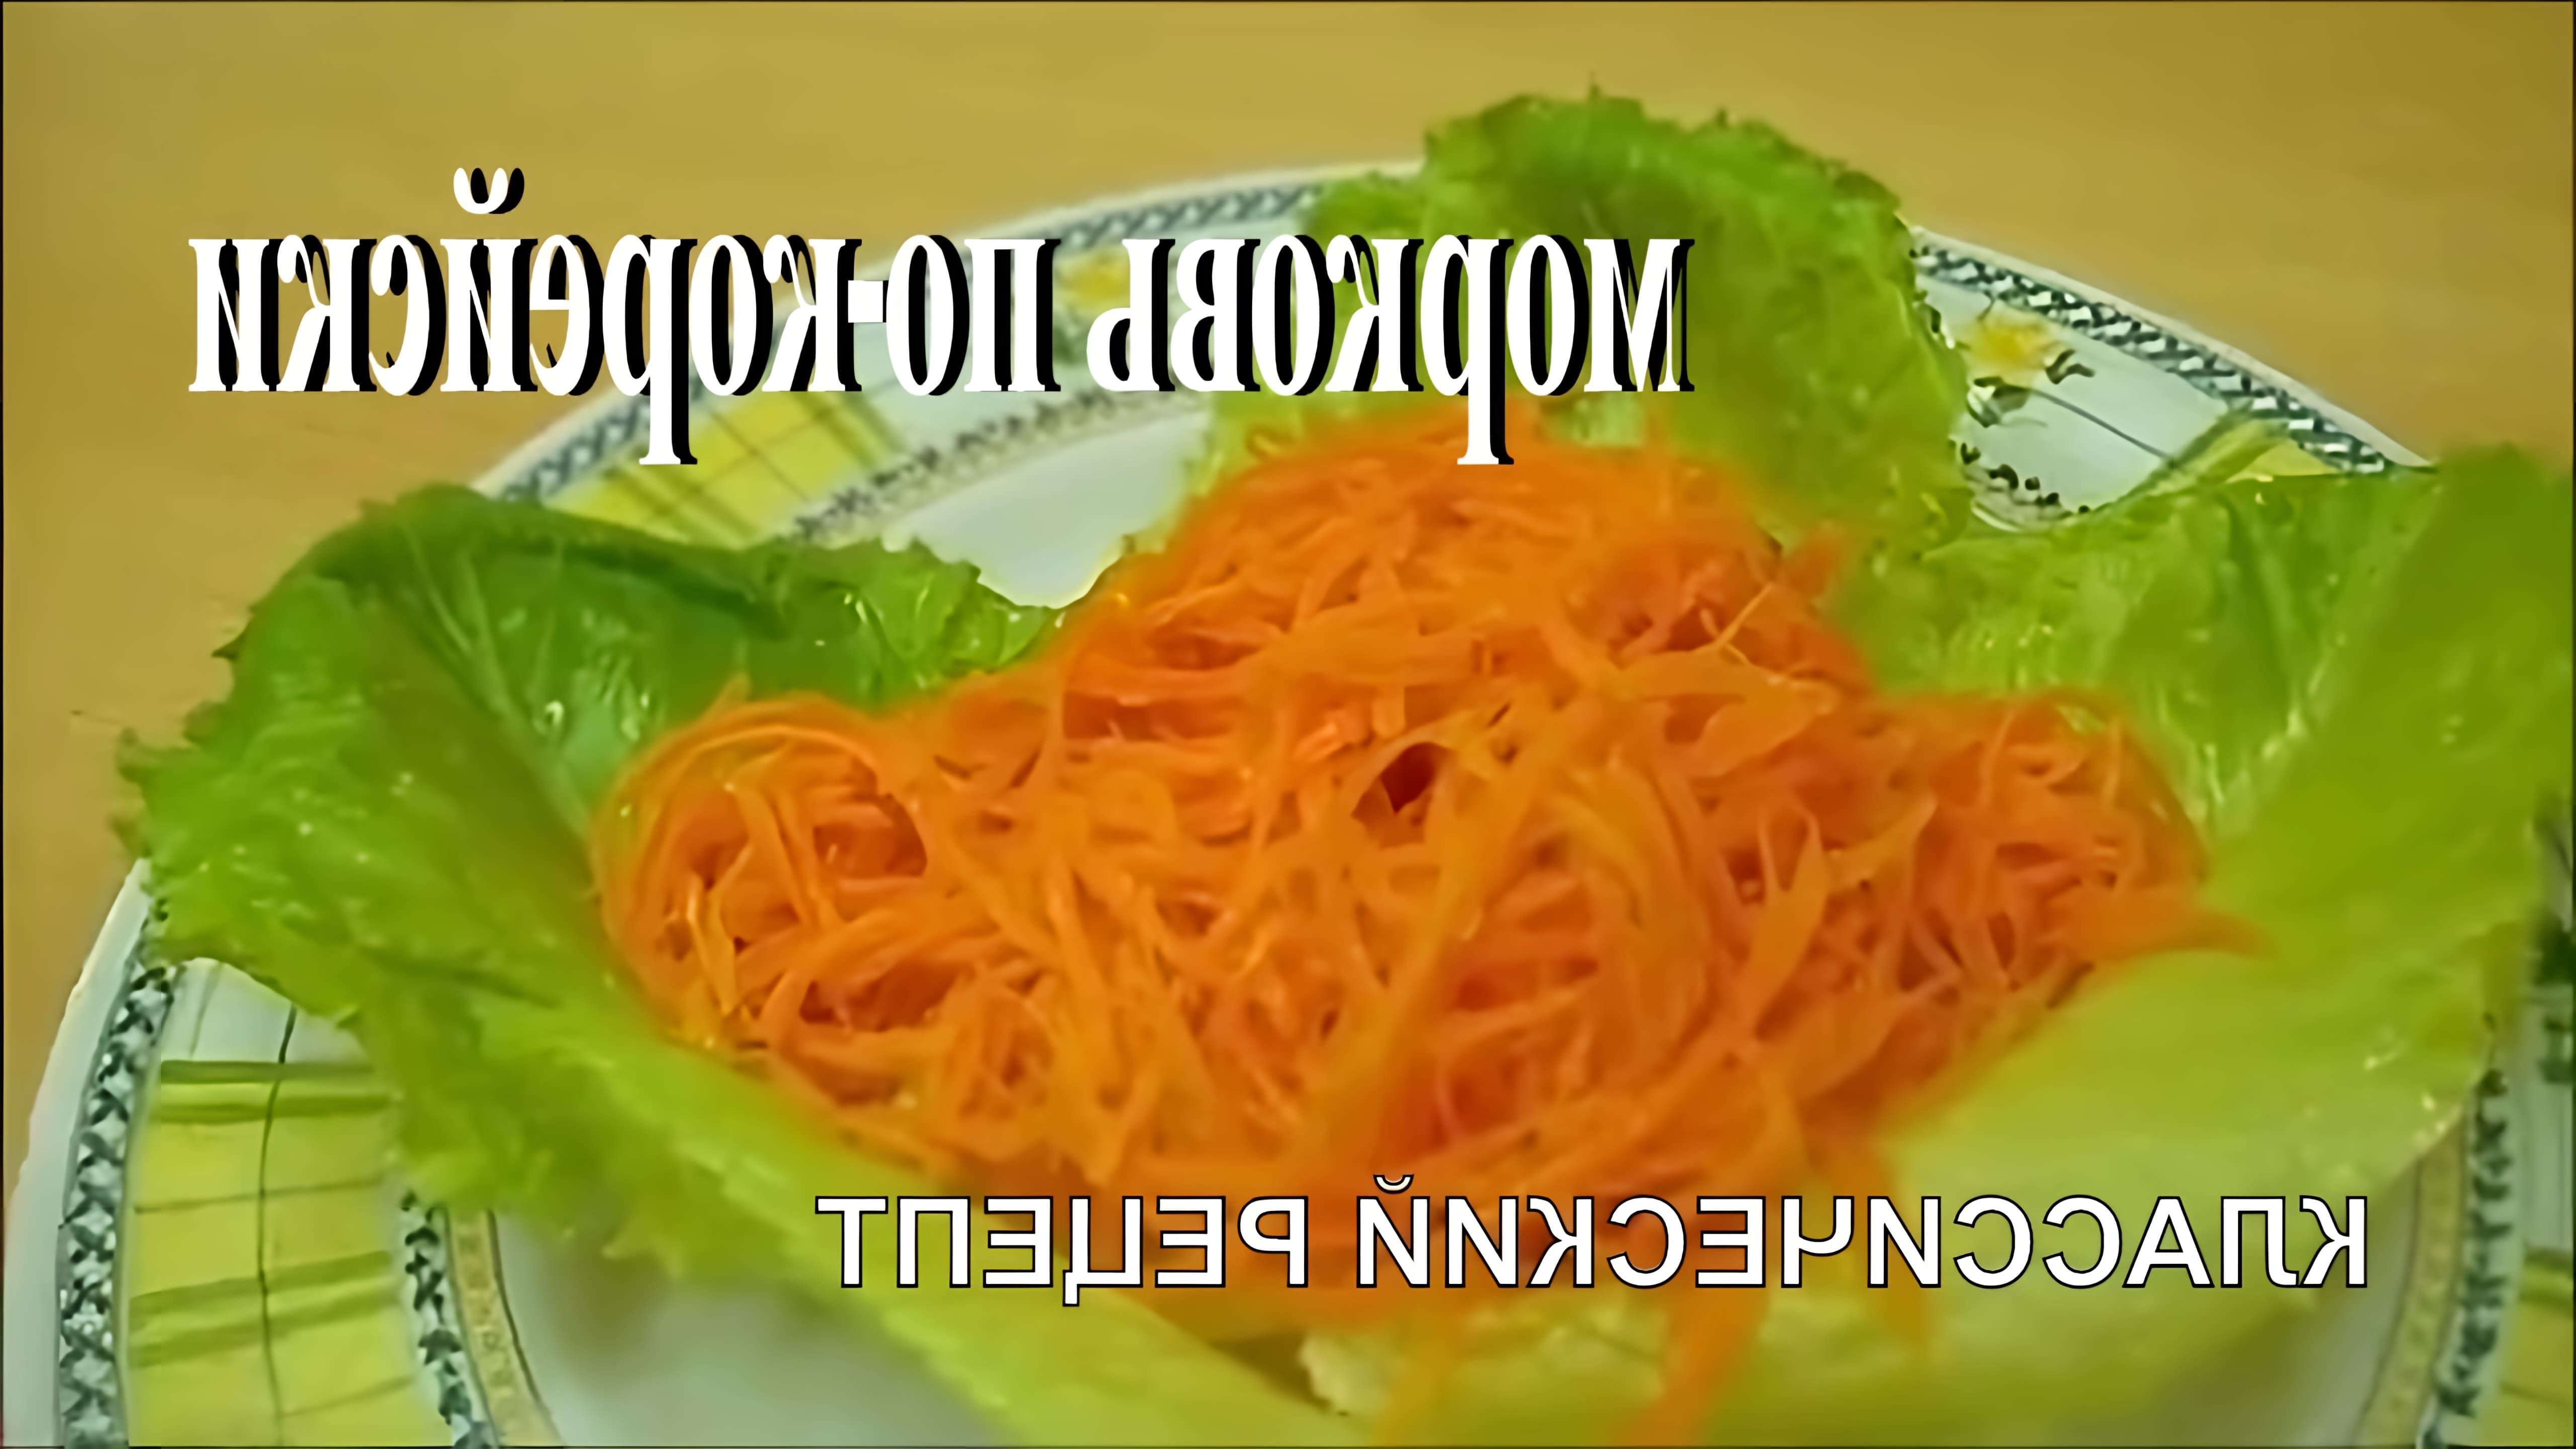 В этом видео демонстрируется рецепт приготовления настоящей корейской морковки